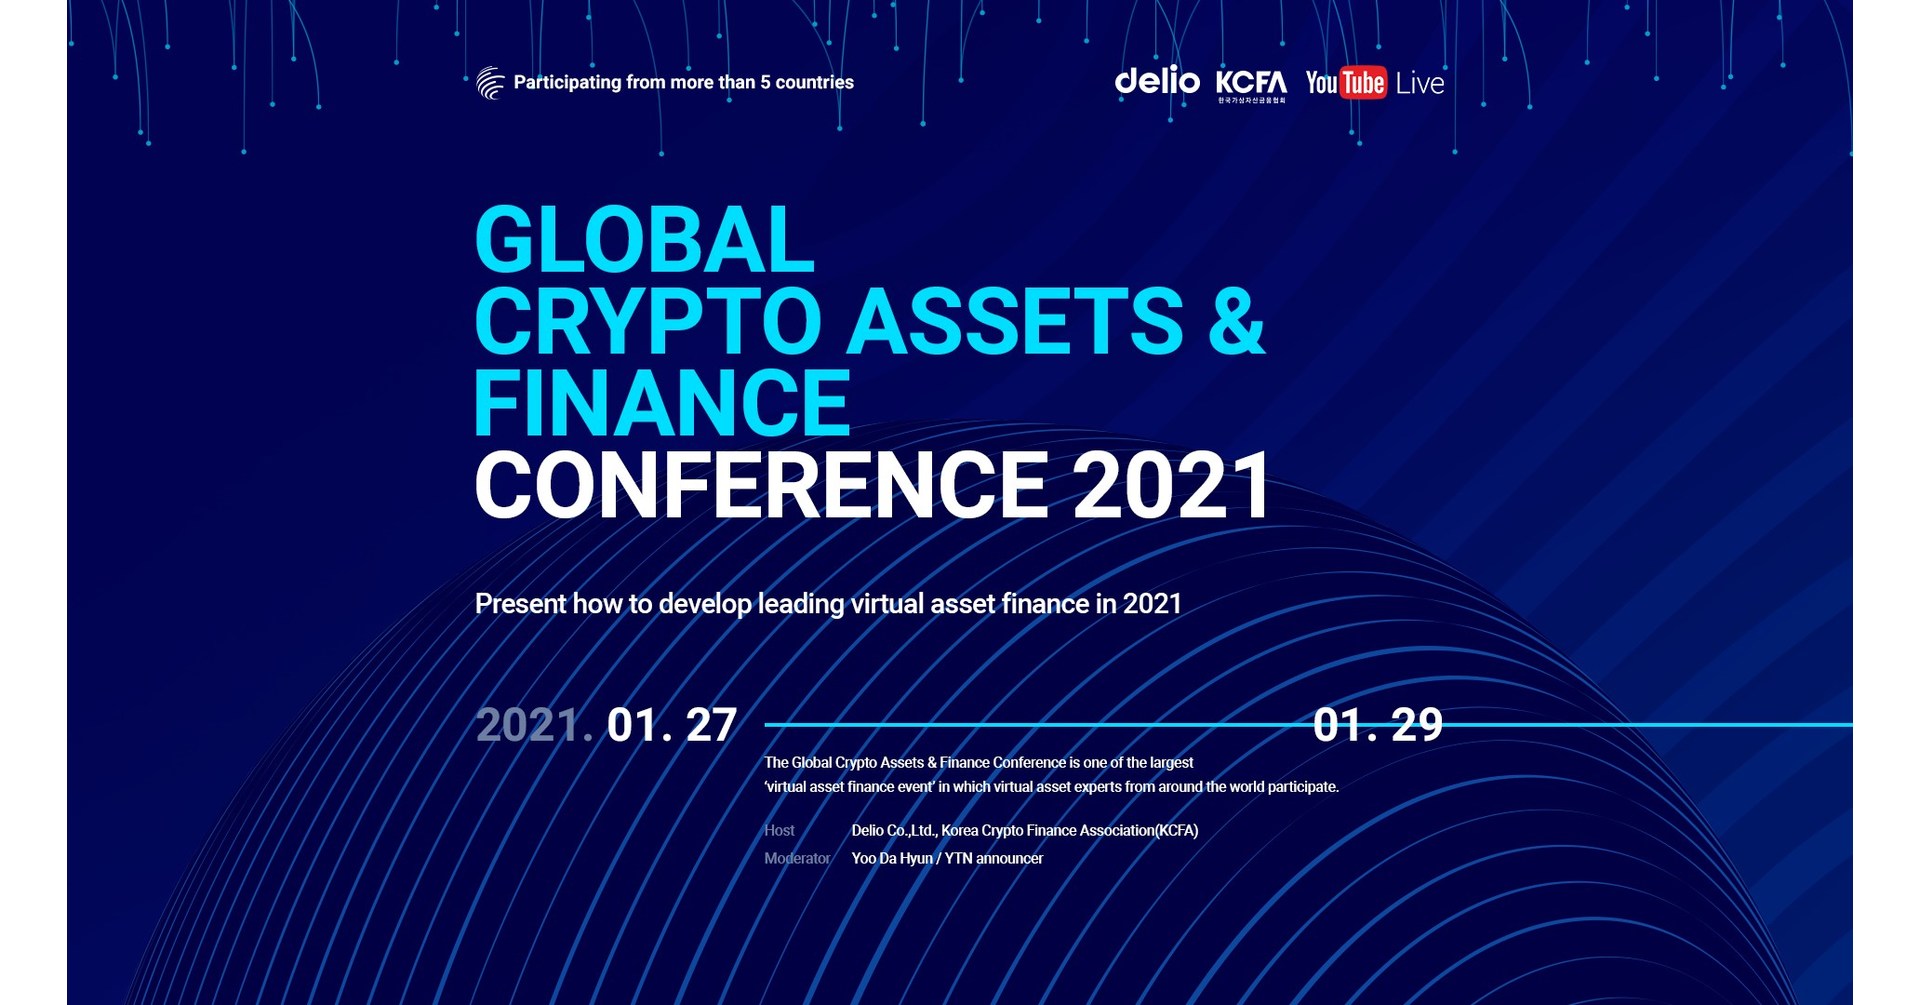 World crypto conference 2021 как получить биткоины со своего компьютера